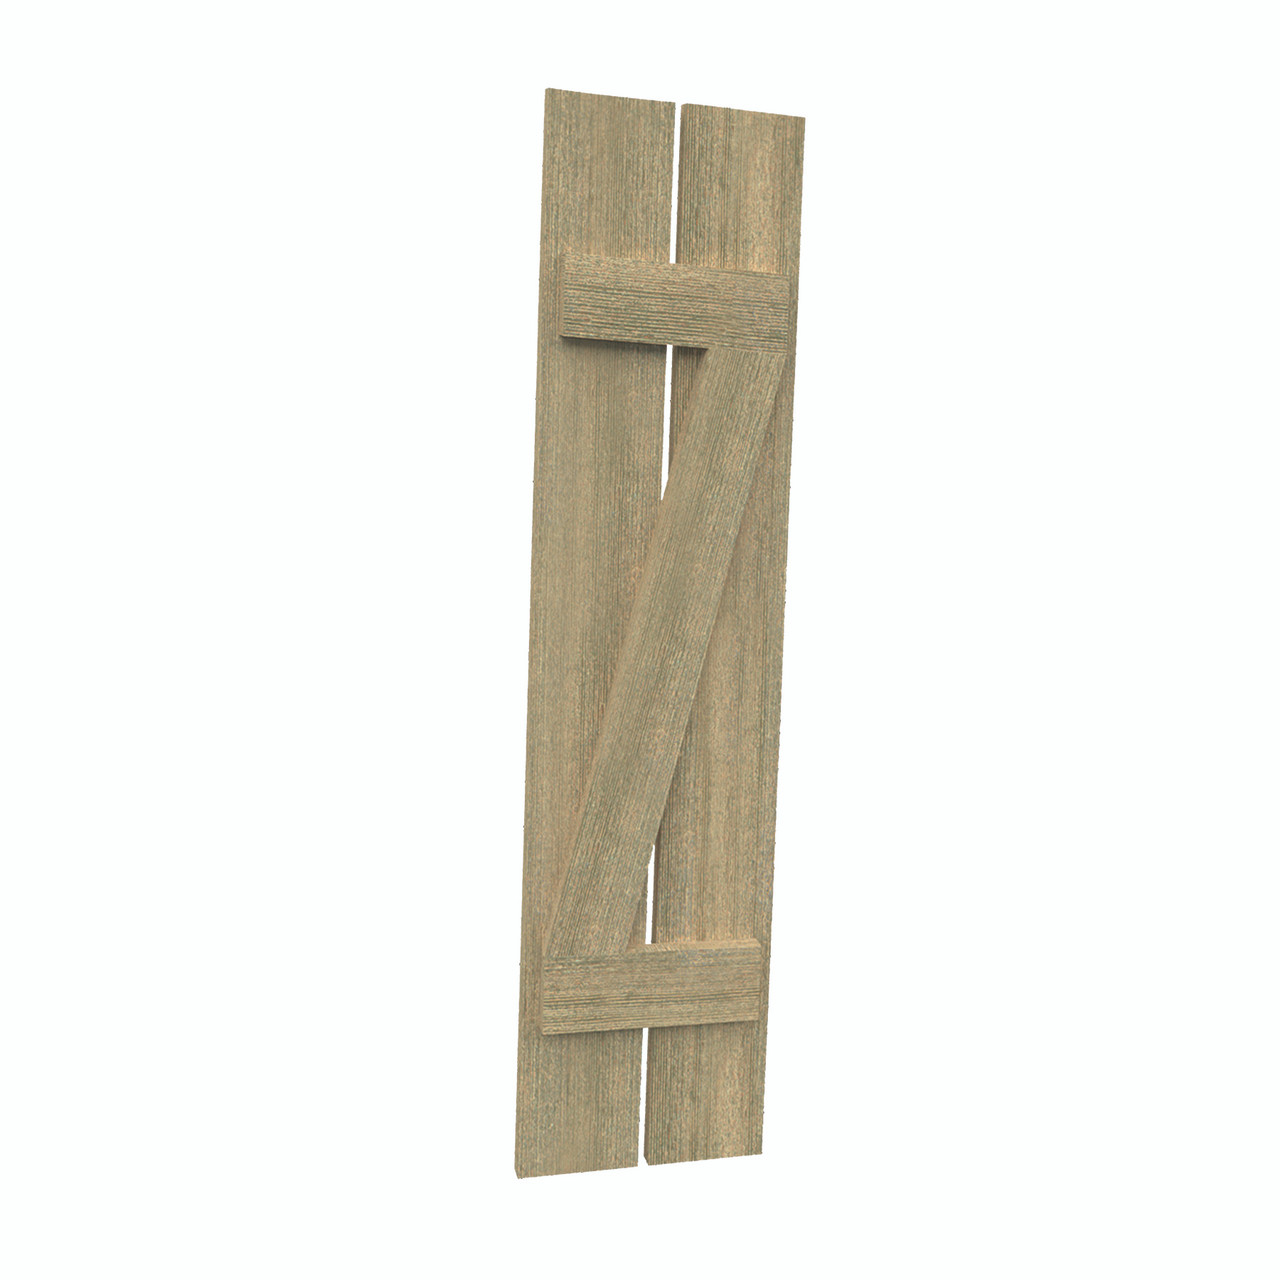 12 inch by 101 inch Plank Shutter with 2-Plank, Z-Batten